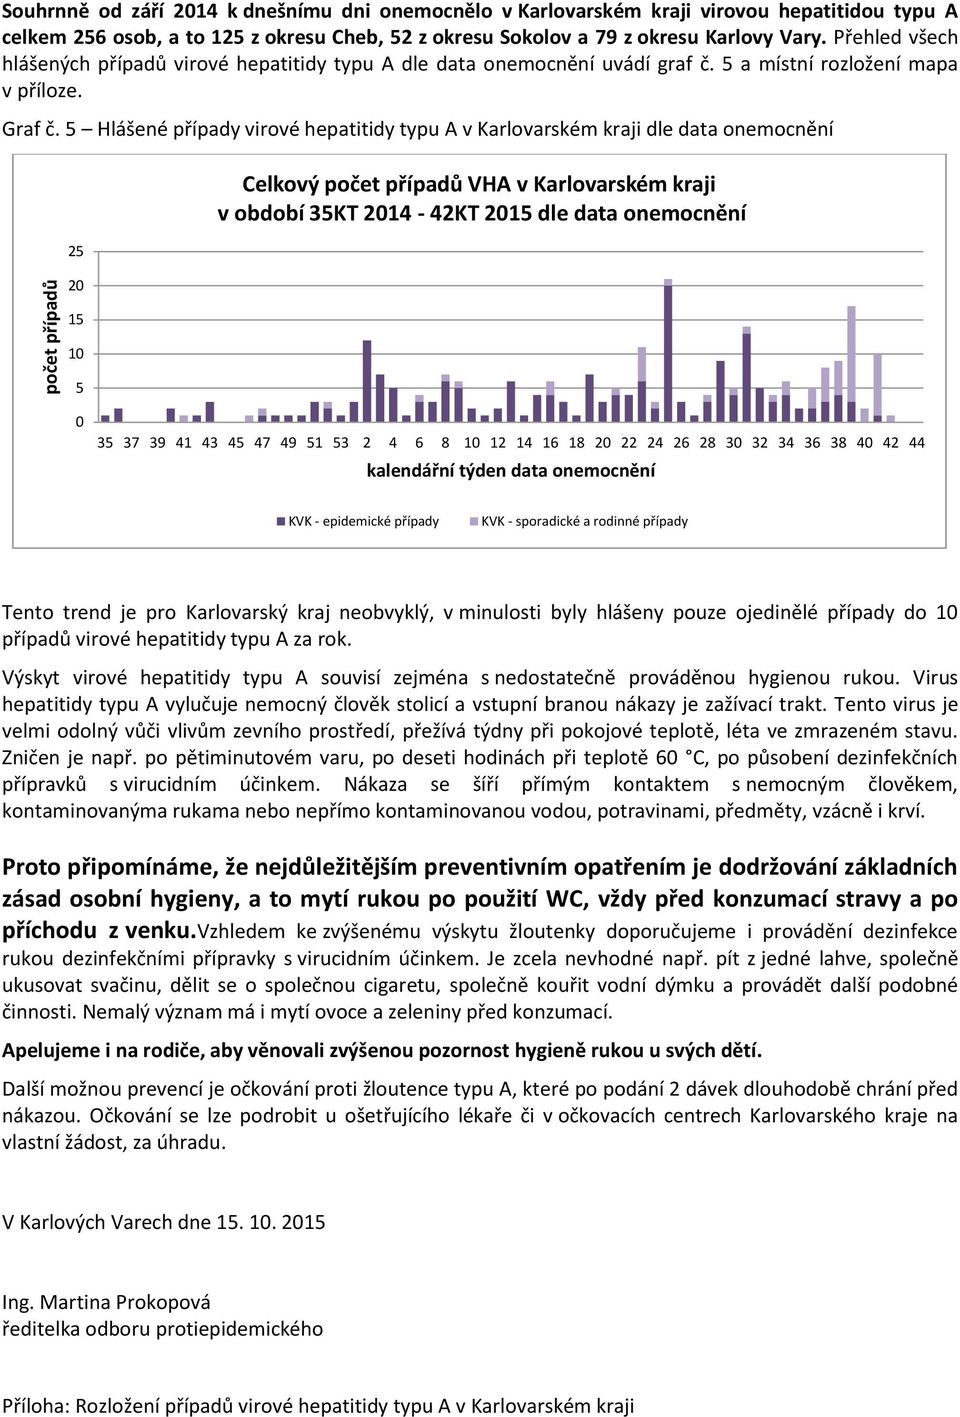 Hlášené případy virové hepatitidy typu A v Karlovarském kraji dle data onemocnění 2 2 Celkový počet případů VHA v Karlovarském kraji v období 3KT 214-42KT 2 dle data onemocnění 1 3 37 39 41 43 4 47